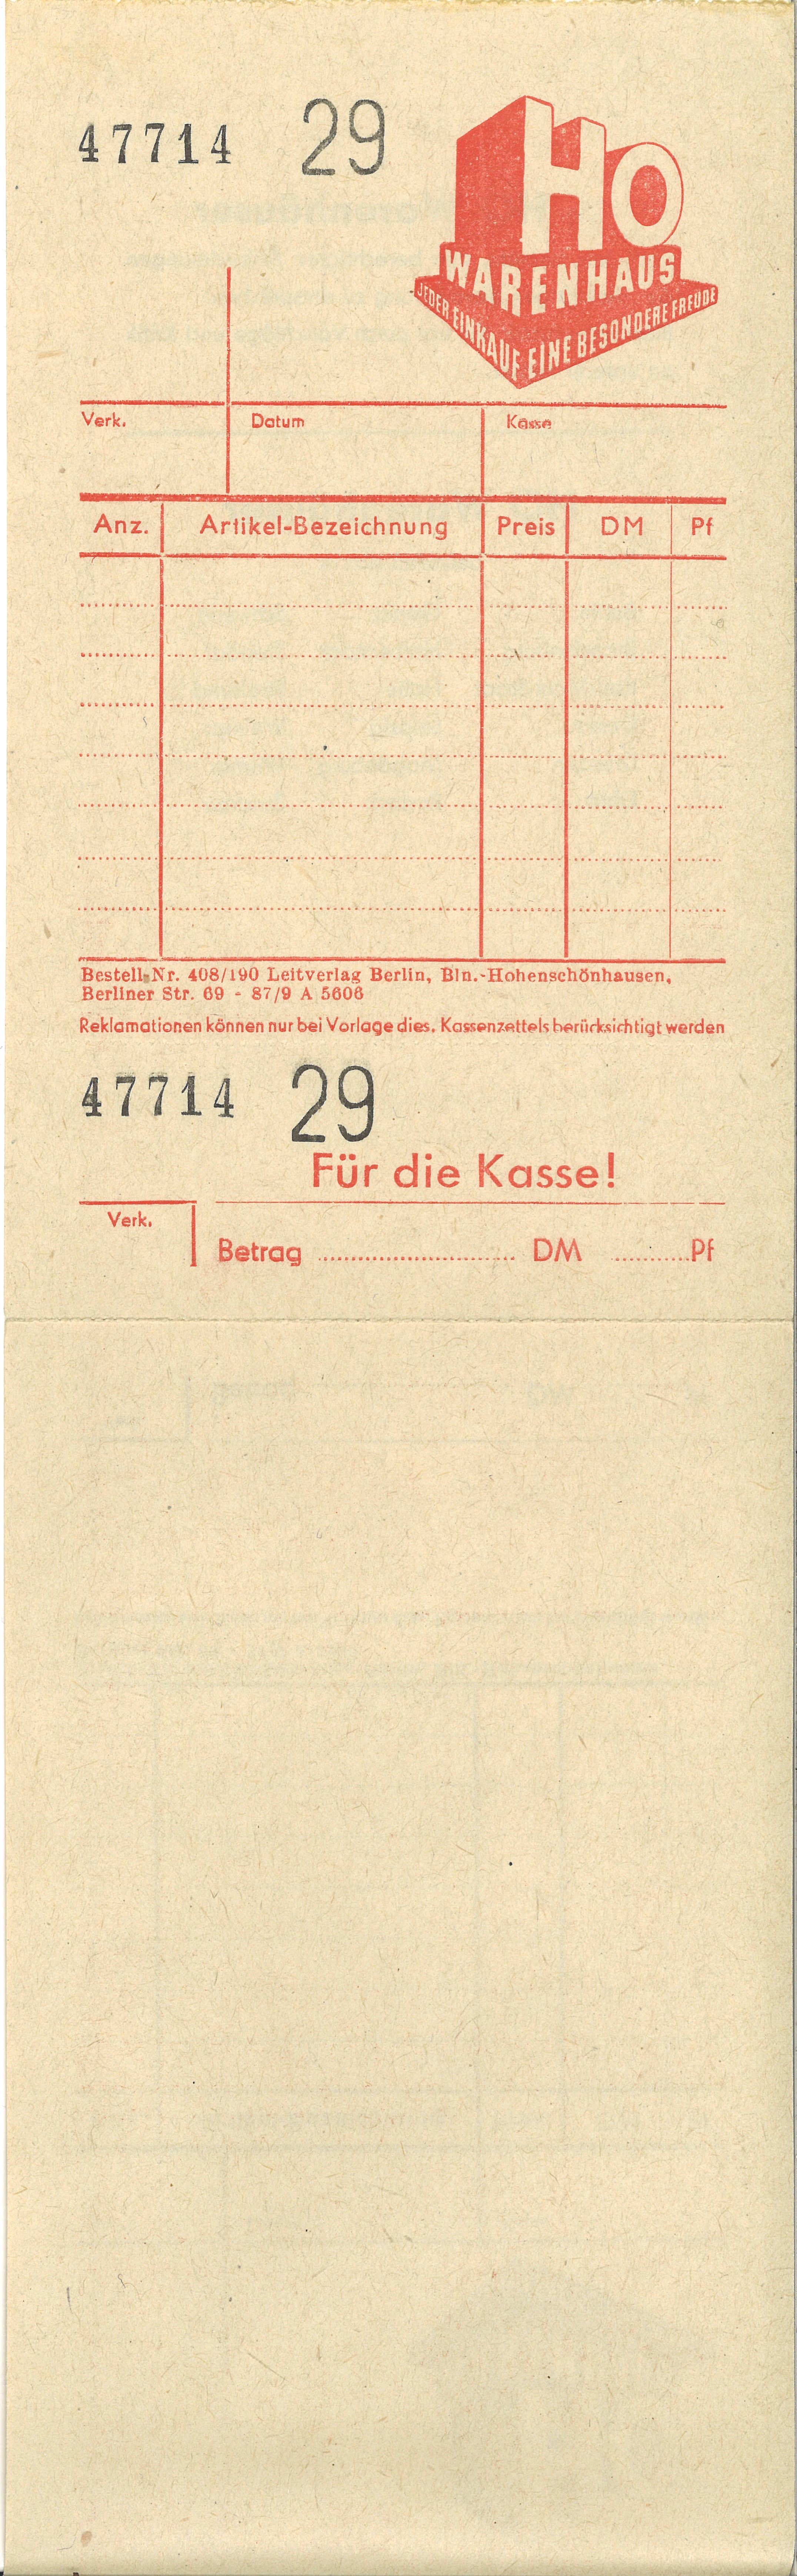 Kassendurchschreibebeleg HO-Warenhäuser; Foto, 1956 (www.industriesalon.de CC BY-NC-SA)